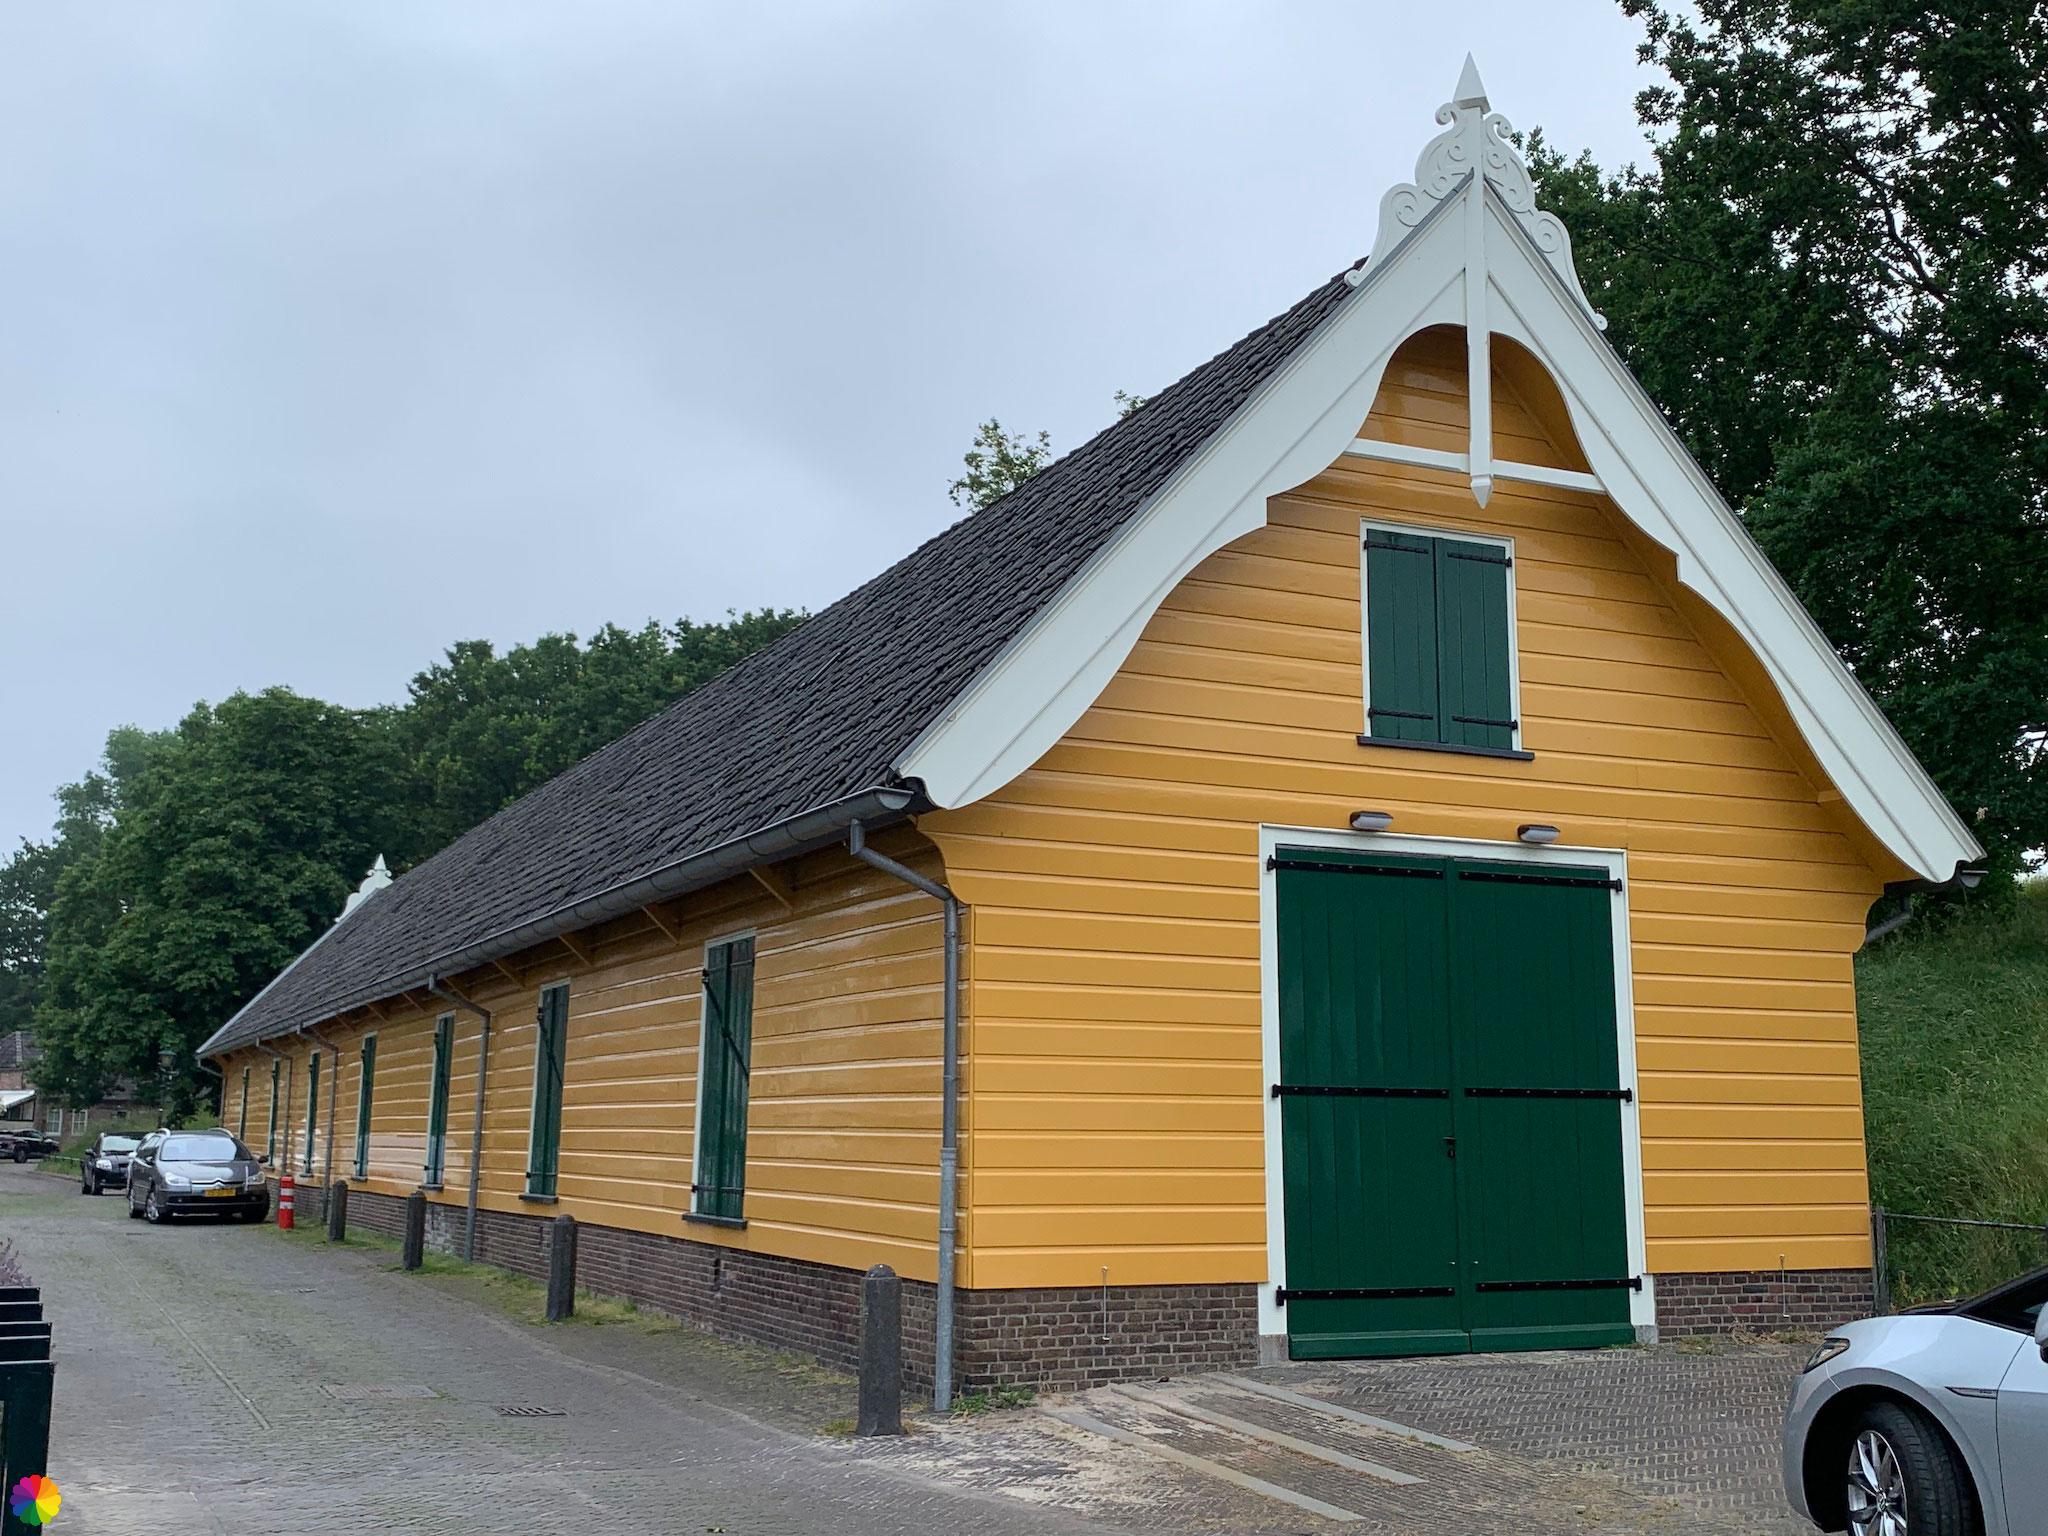 Yellow building in Naarden-Vesting